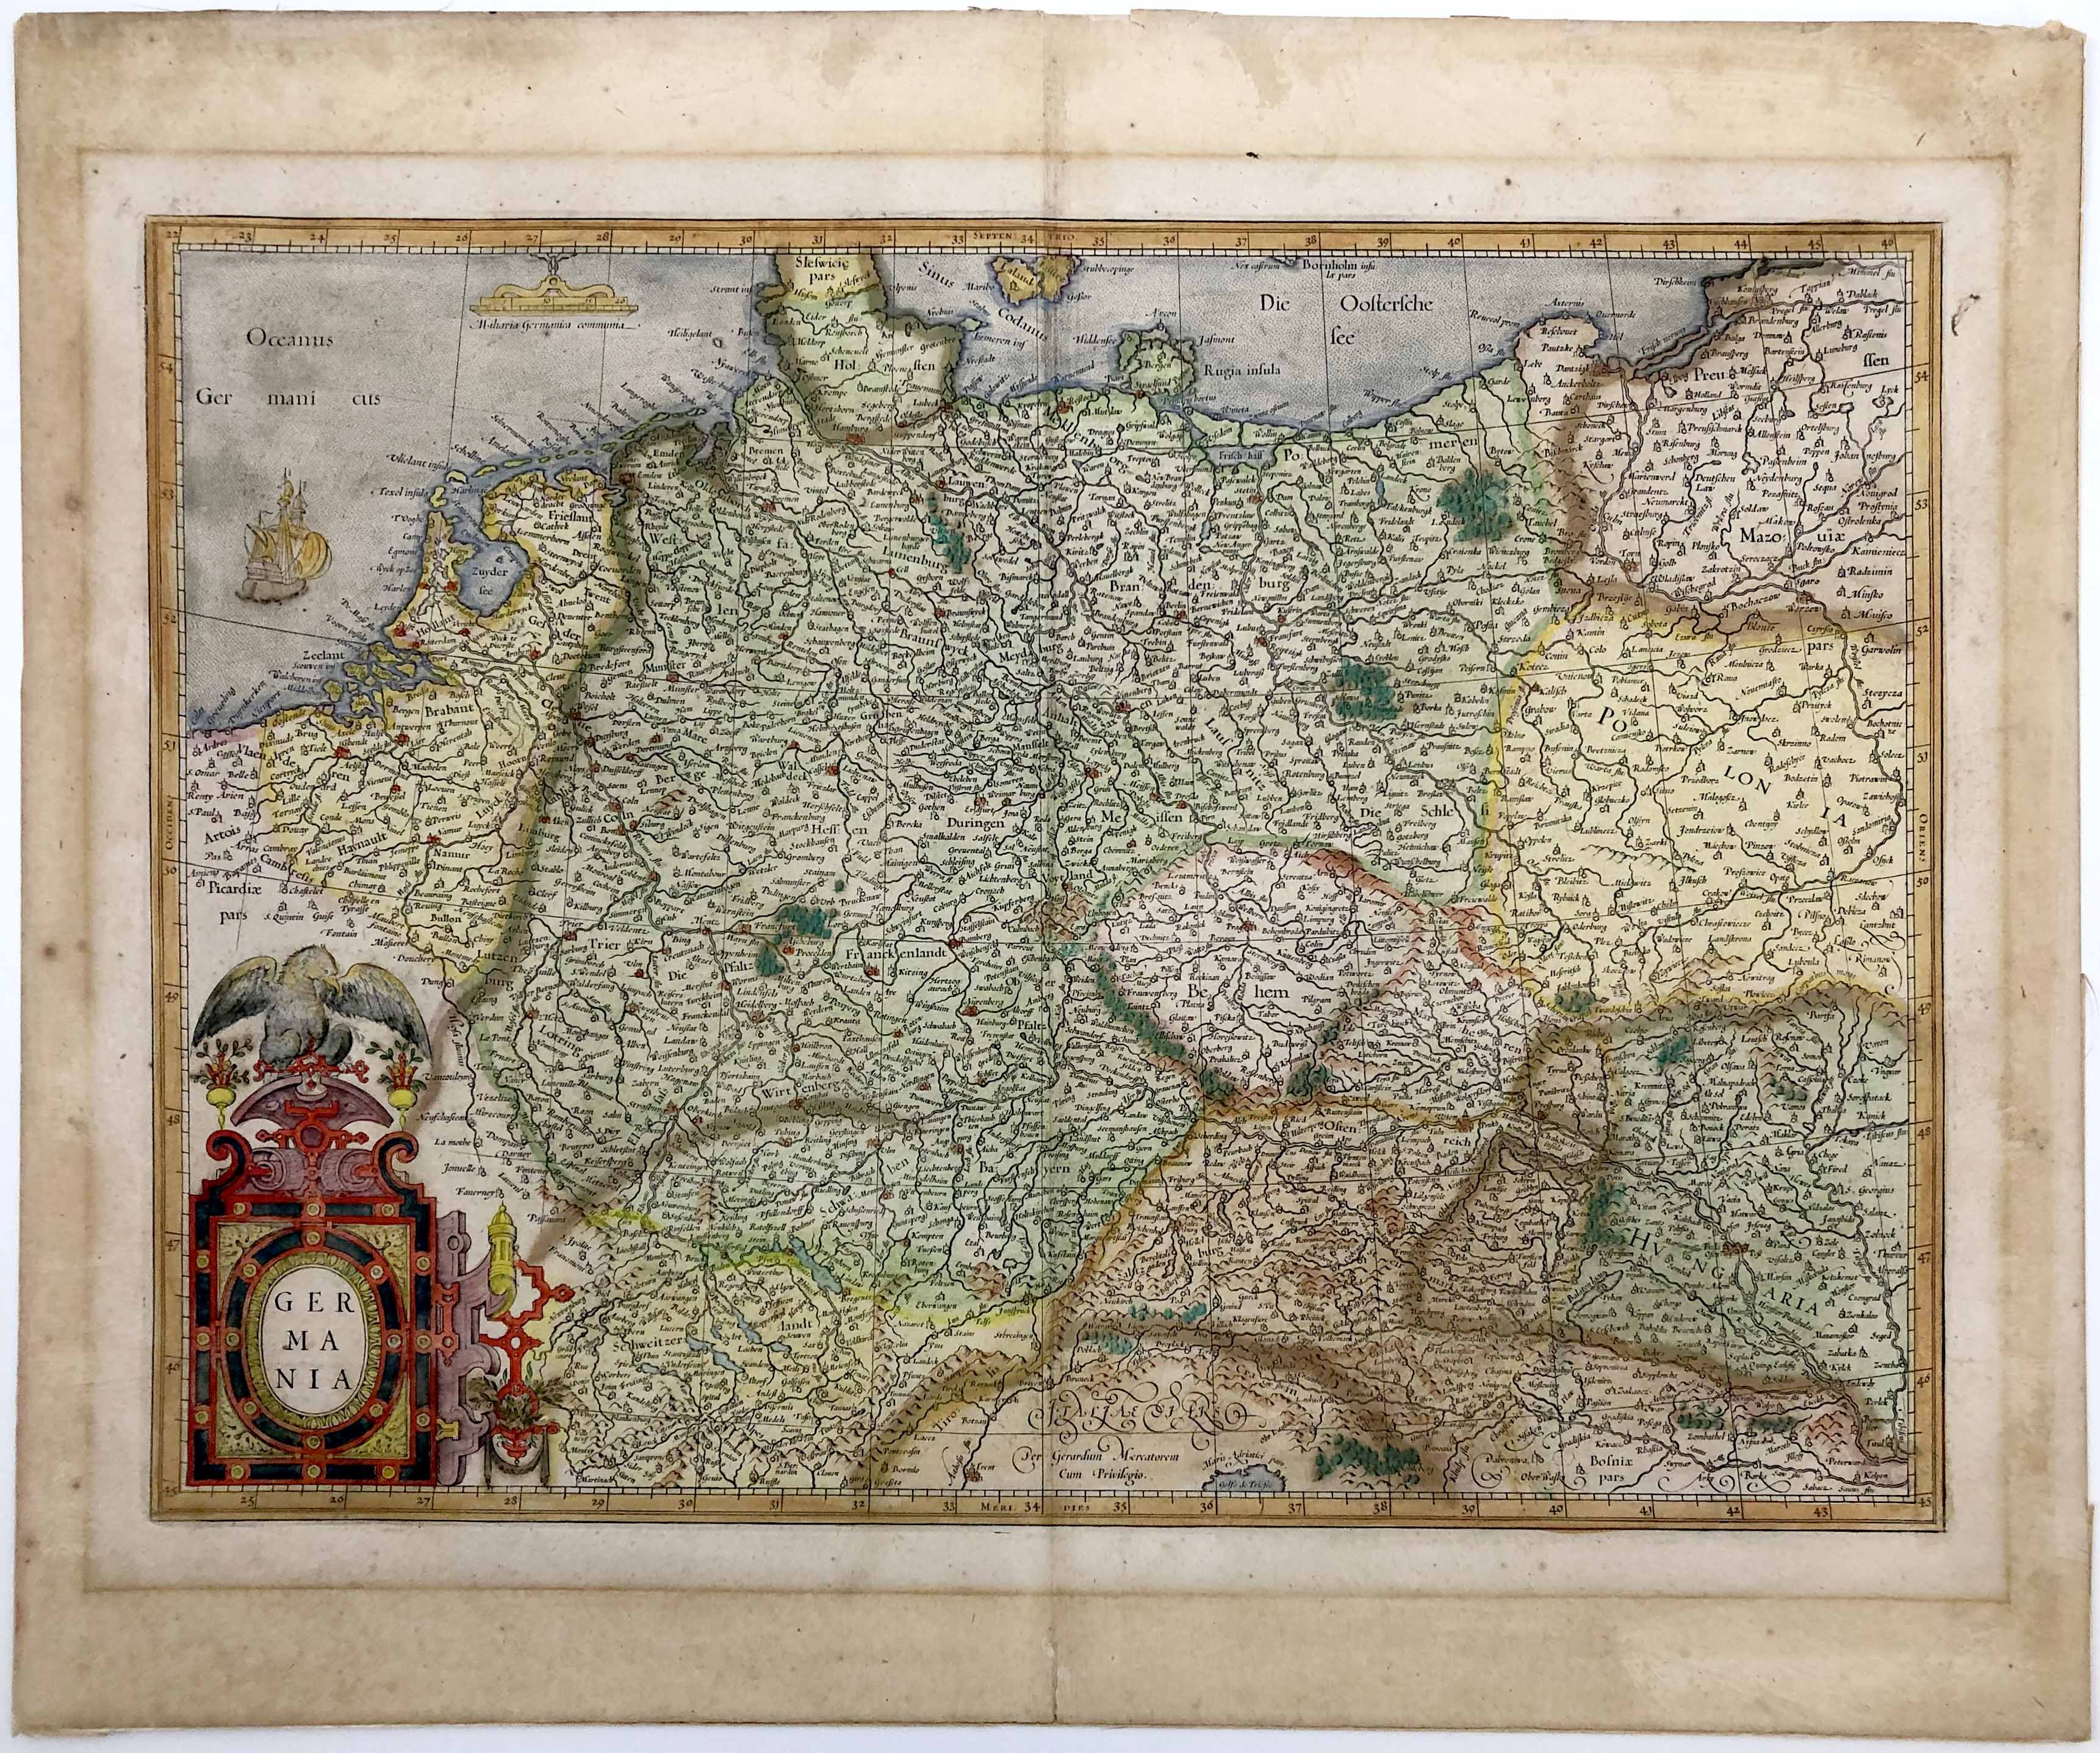 Deutschland in der Zeit um 1594 von Gerard Mercator